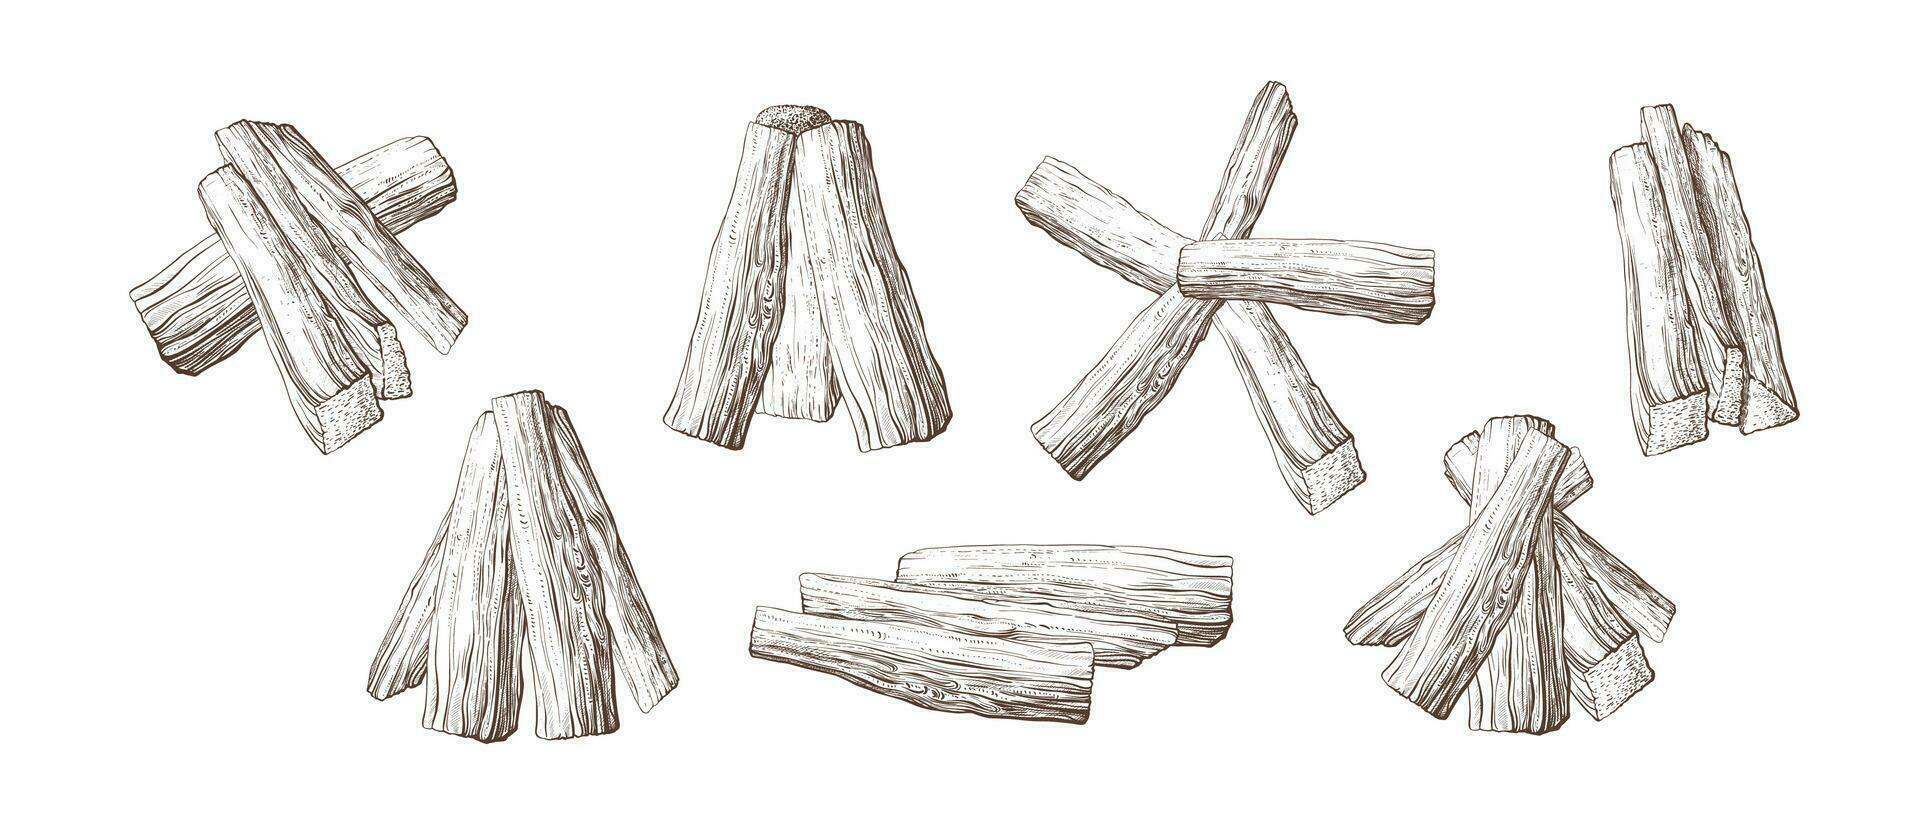 brandhout reeks hout stapel voor vreugdevuur vector schetsen